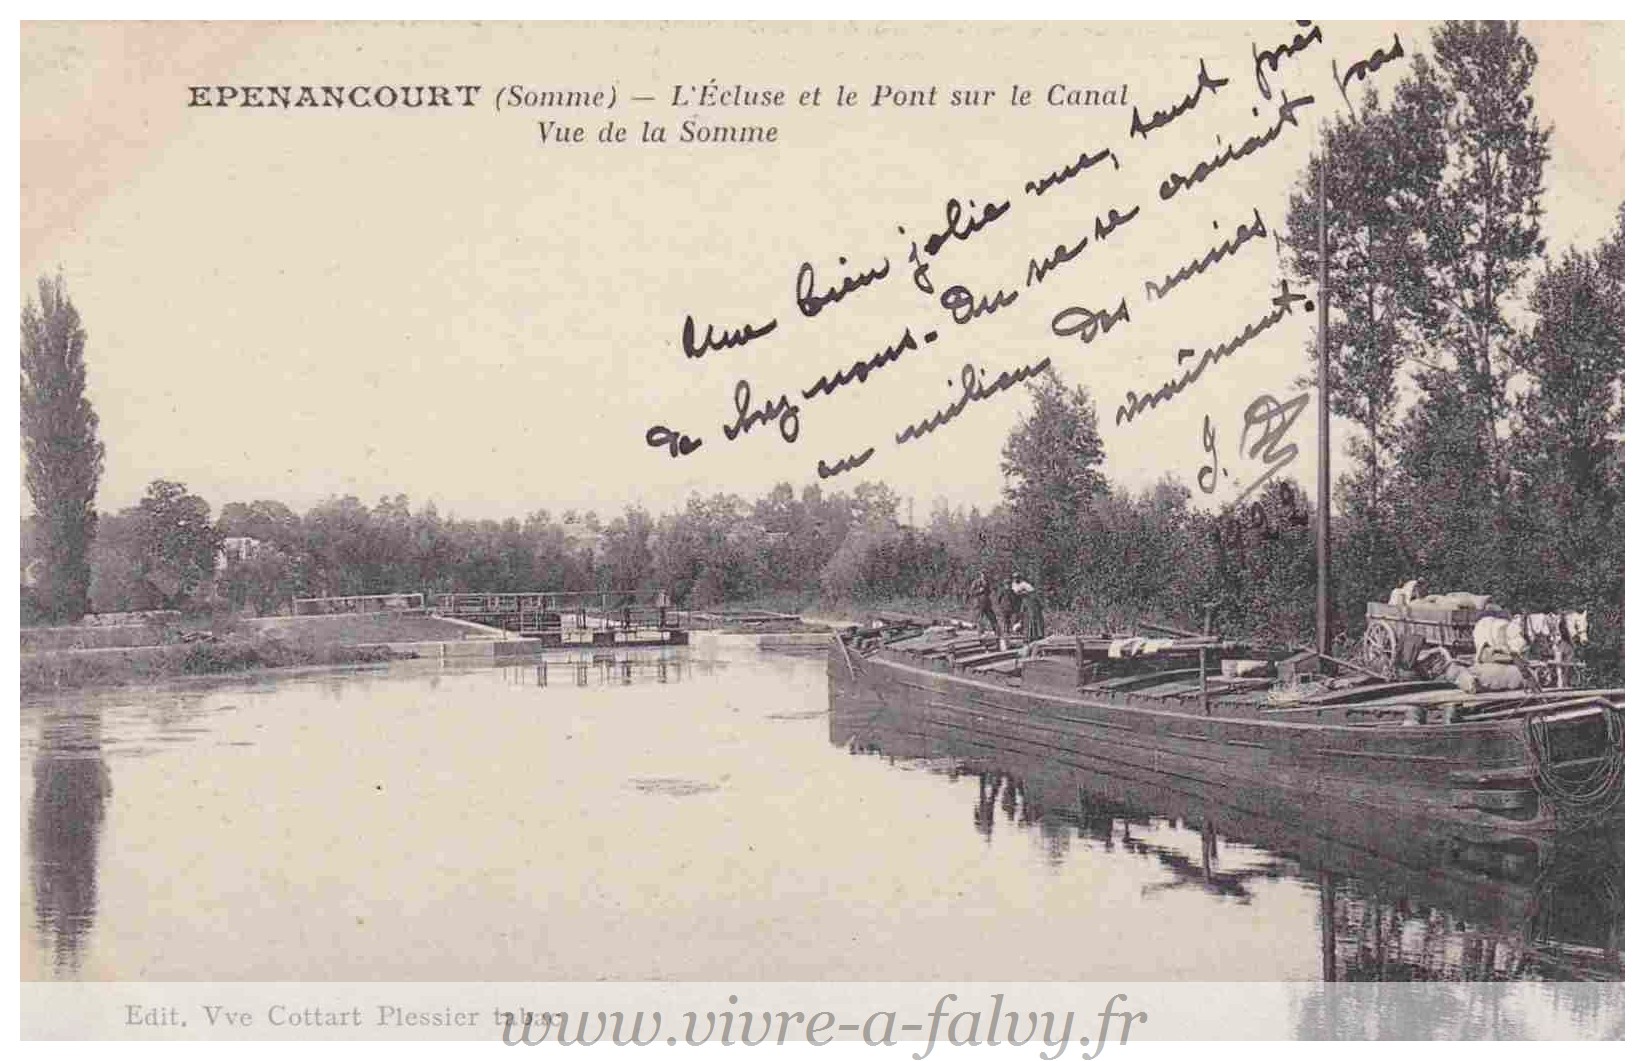 Epenancourt - Ecluse et le Pont sur le Canal